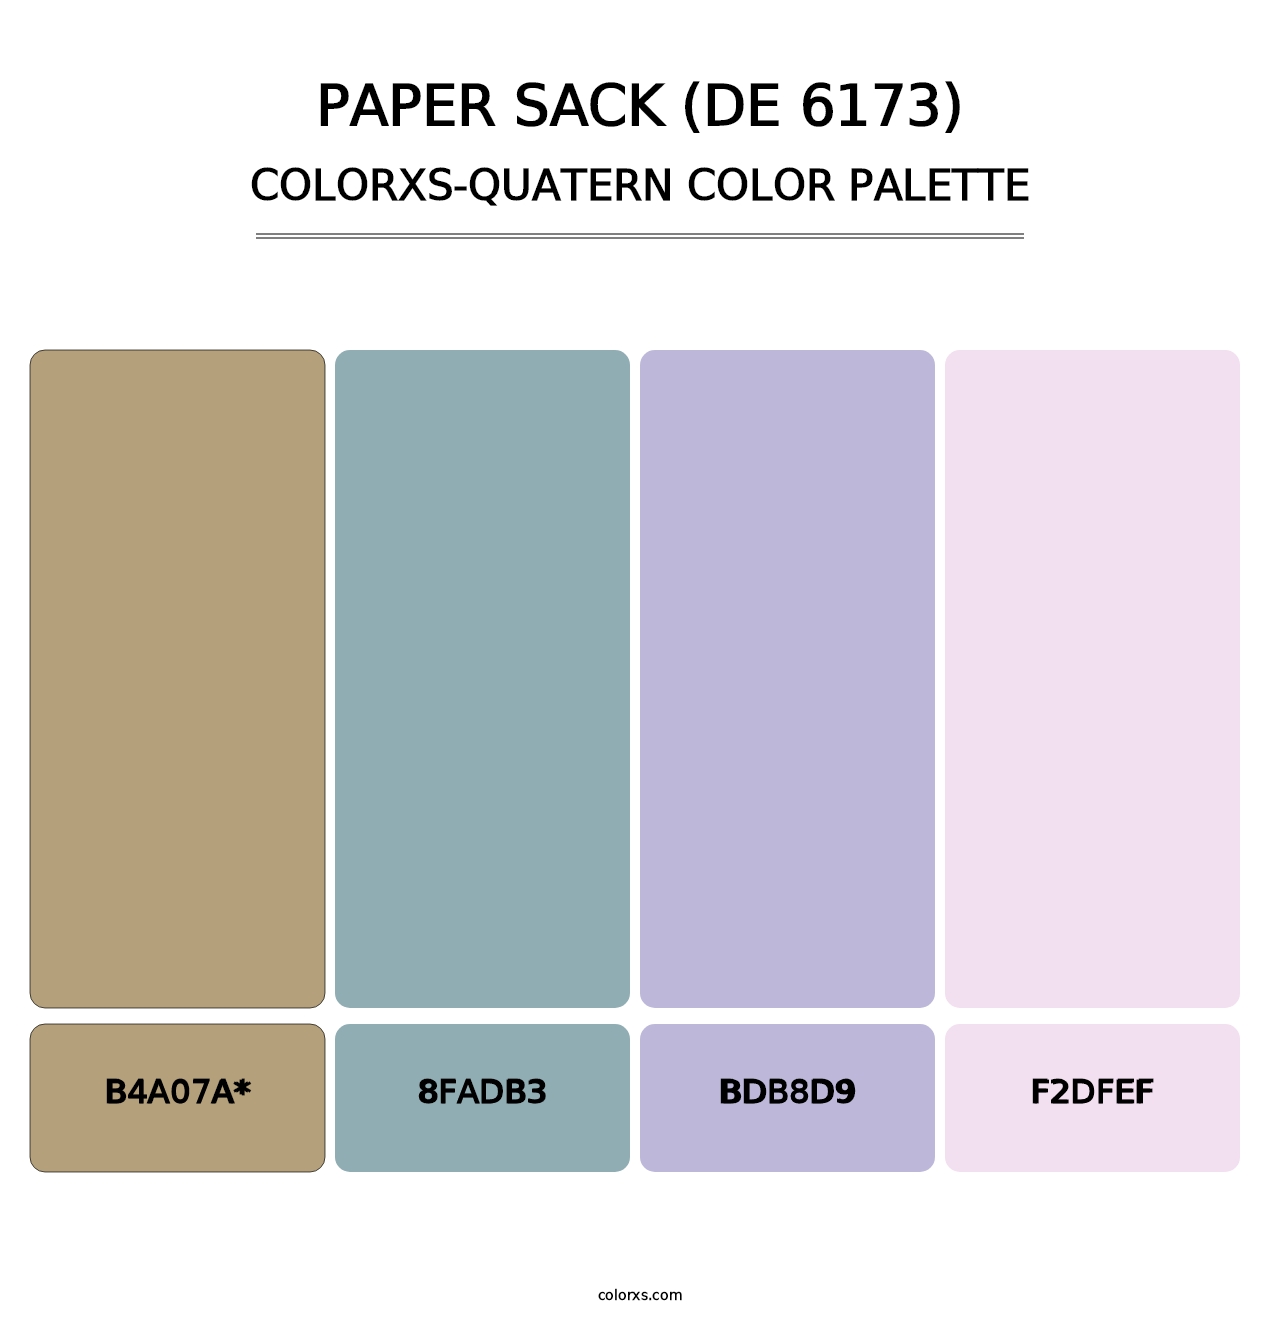 Paper Sack (DE 6173) - Colorxs Quatern Palette